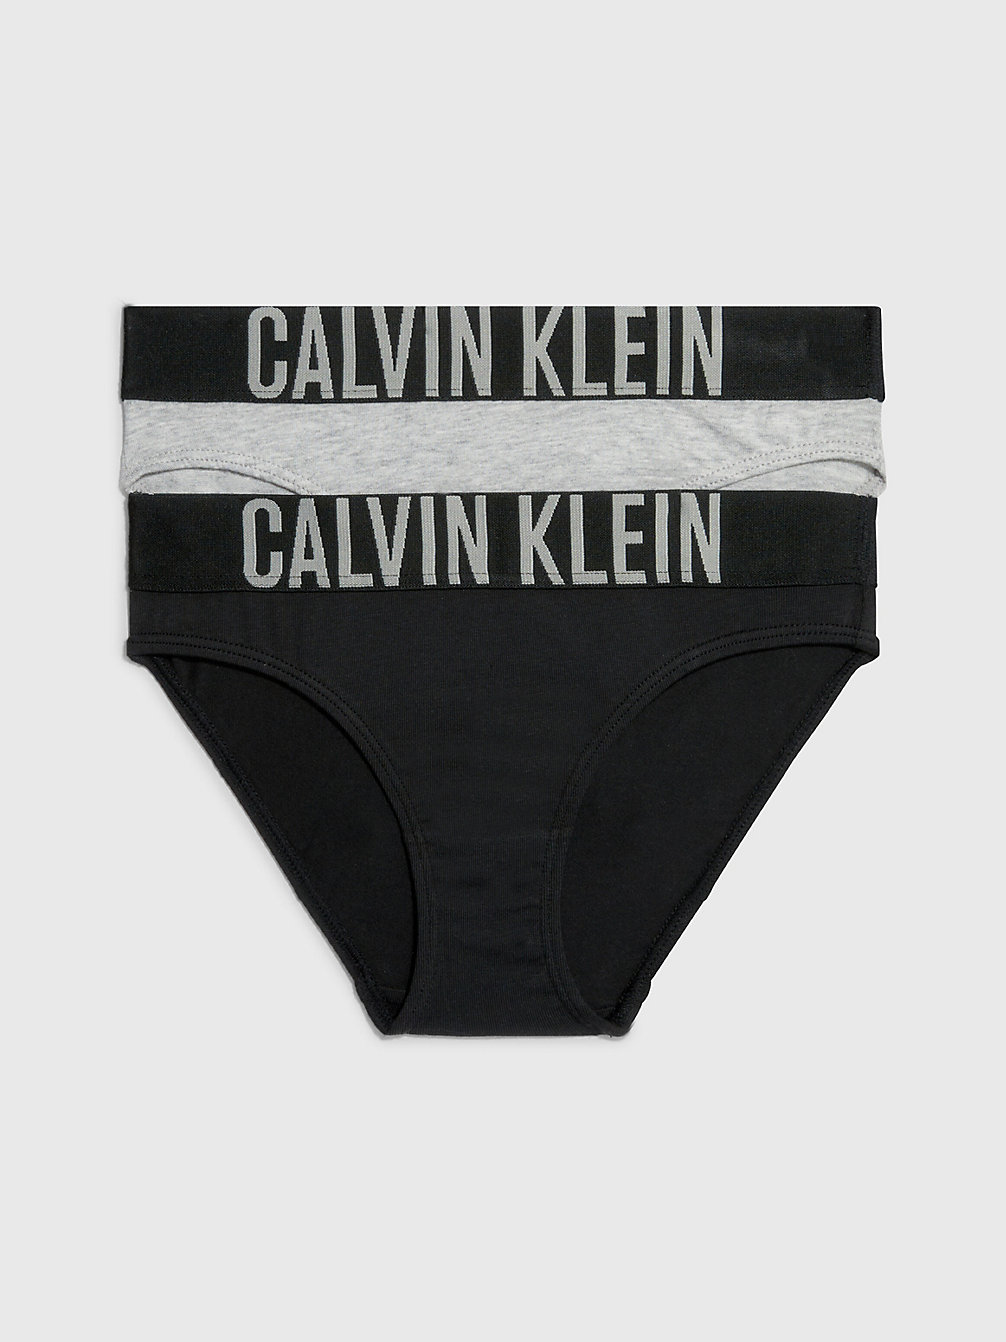 1 GREY HEATHER/ 1 BLACK > 2er-Pack Mädchen-Slips - Intense Power > undefined girls - Calvin Klein